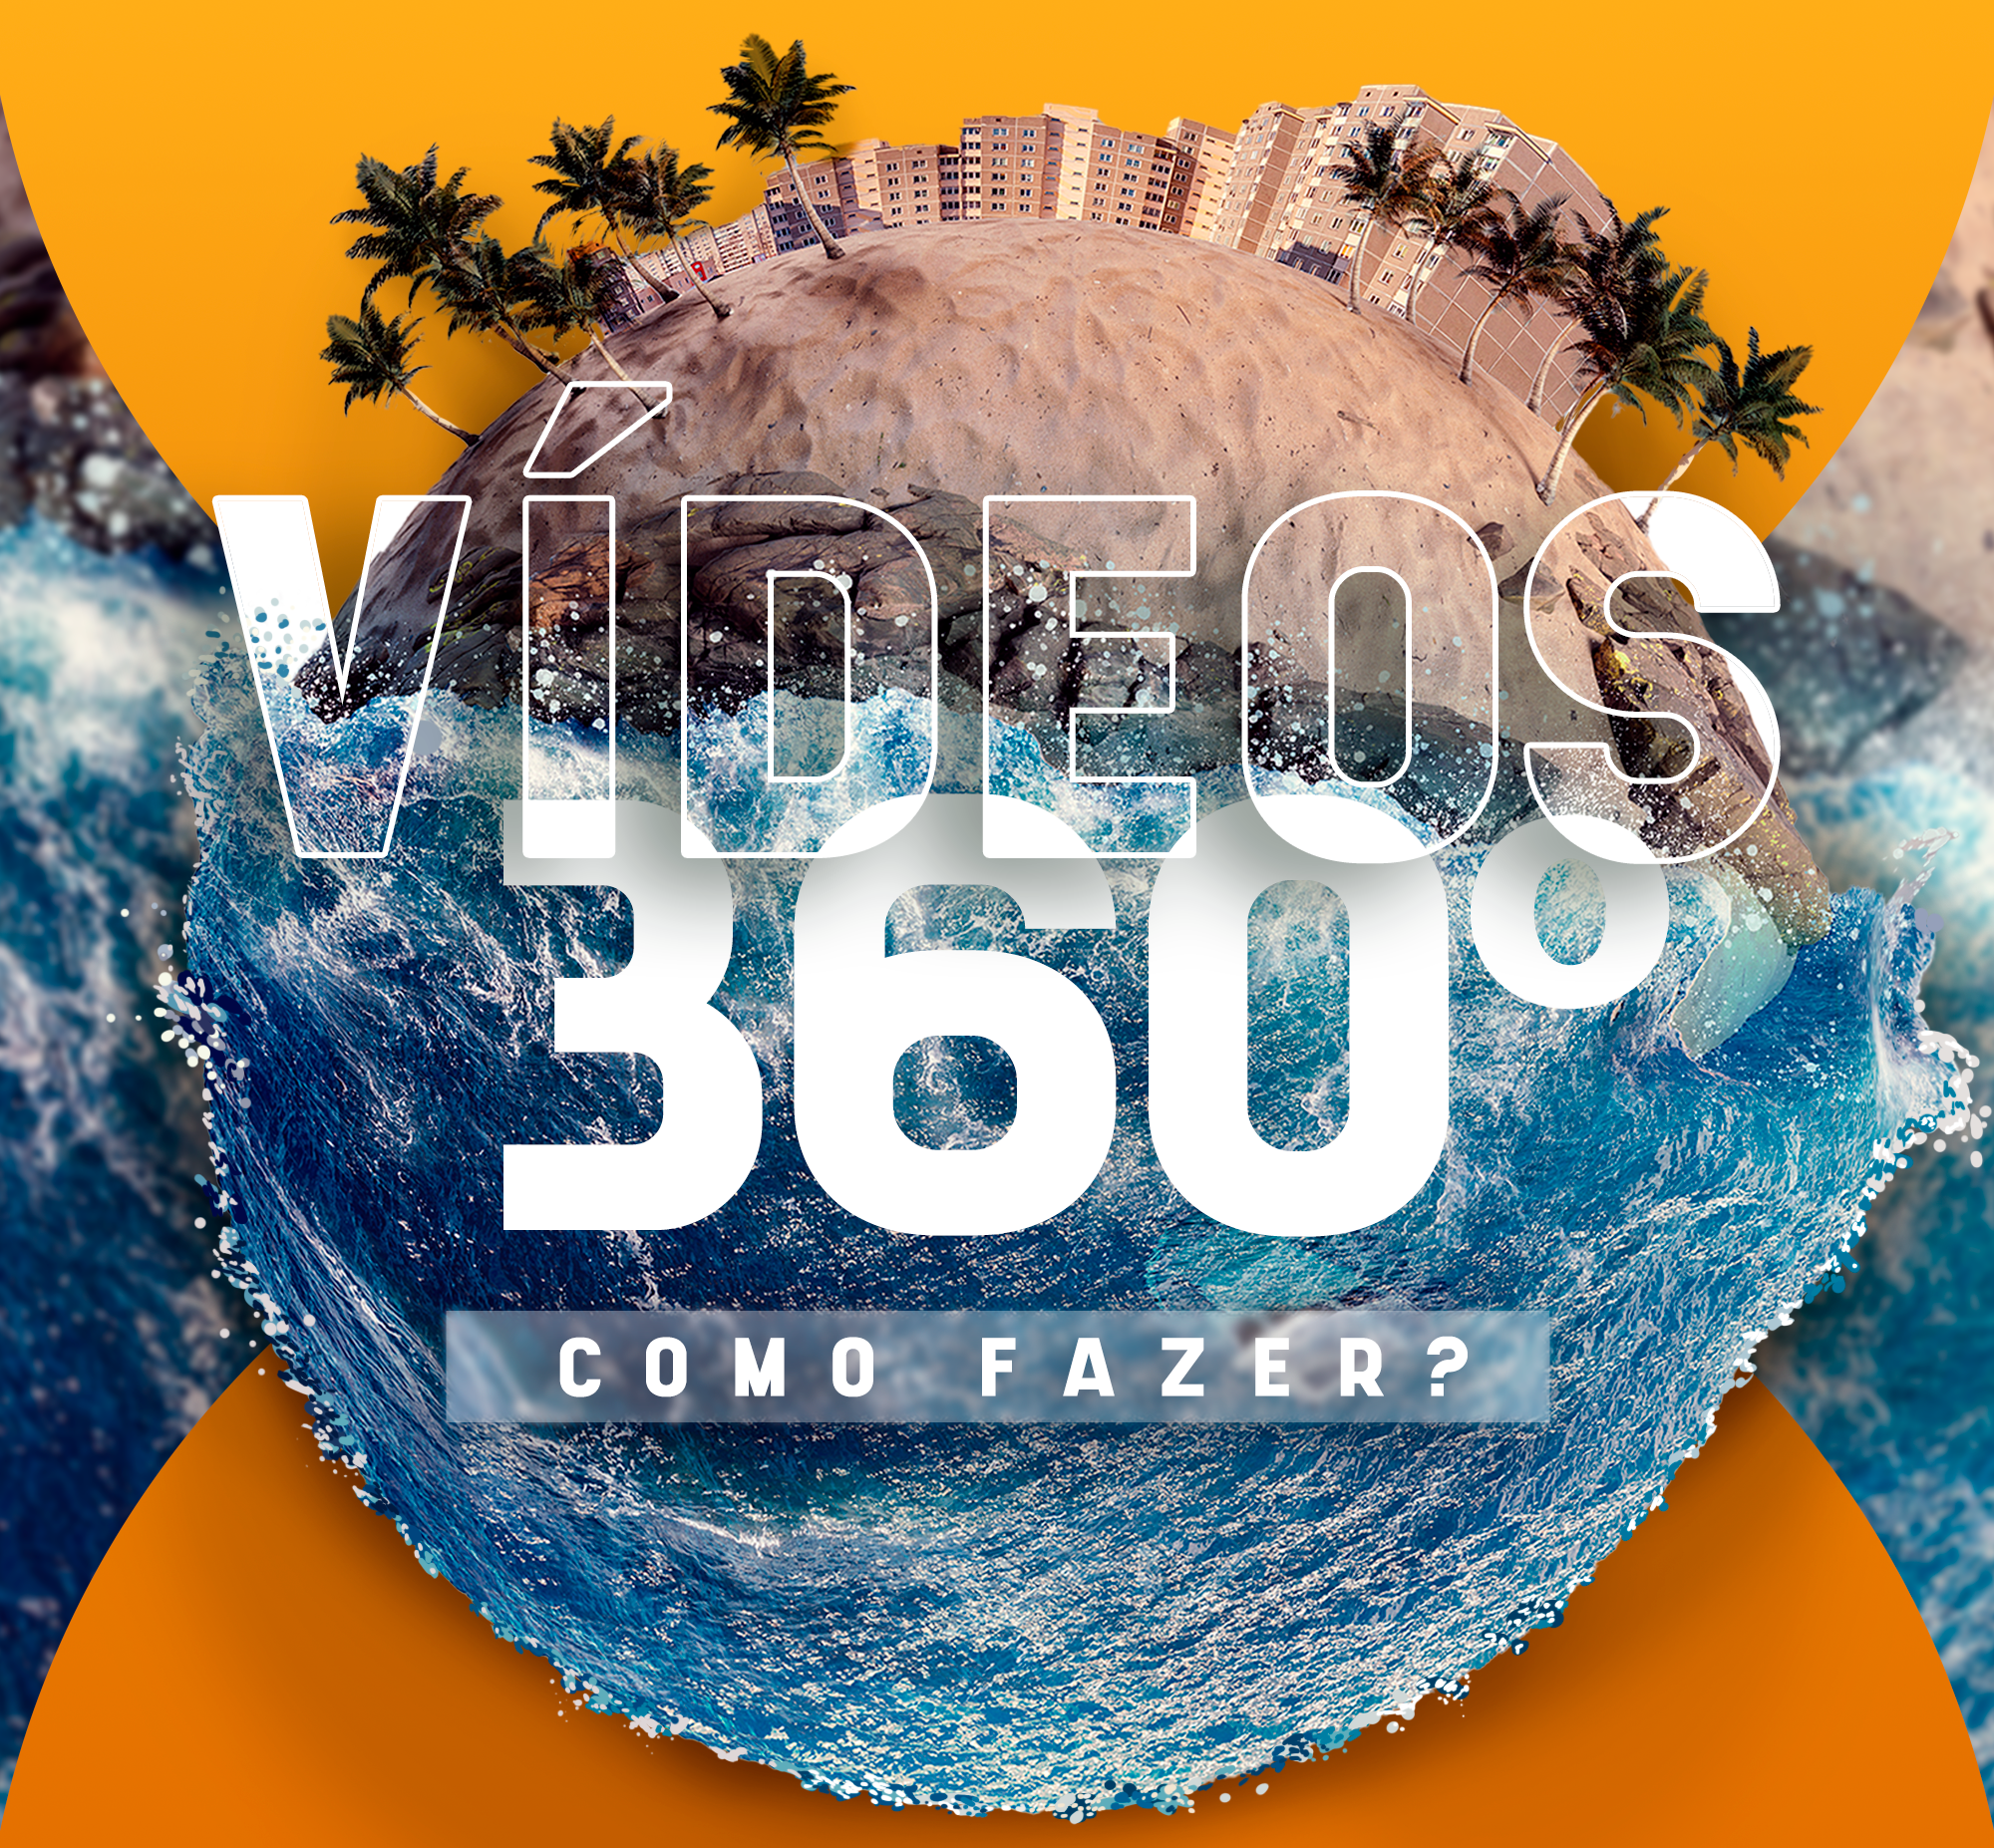 Como fazer vídeos 360 graus? Confira agora! 